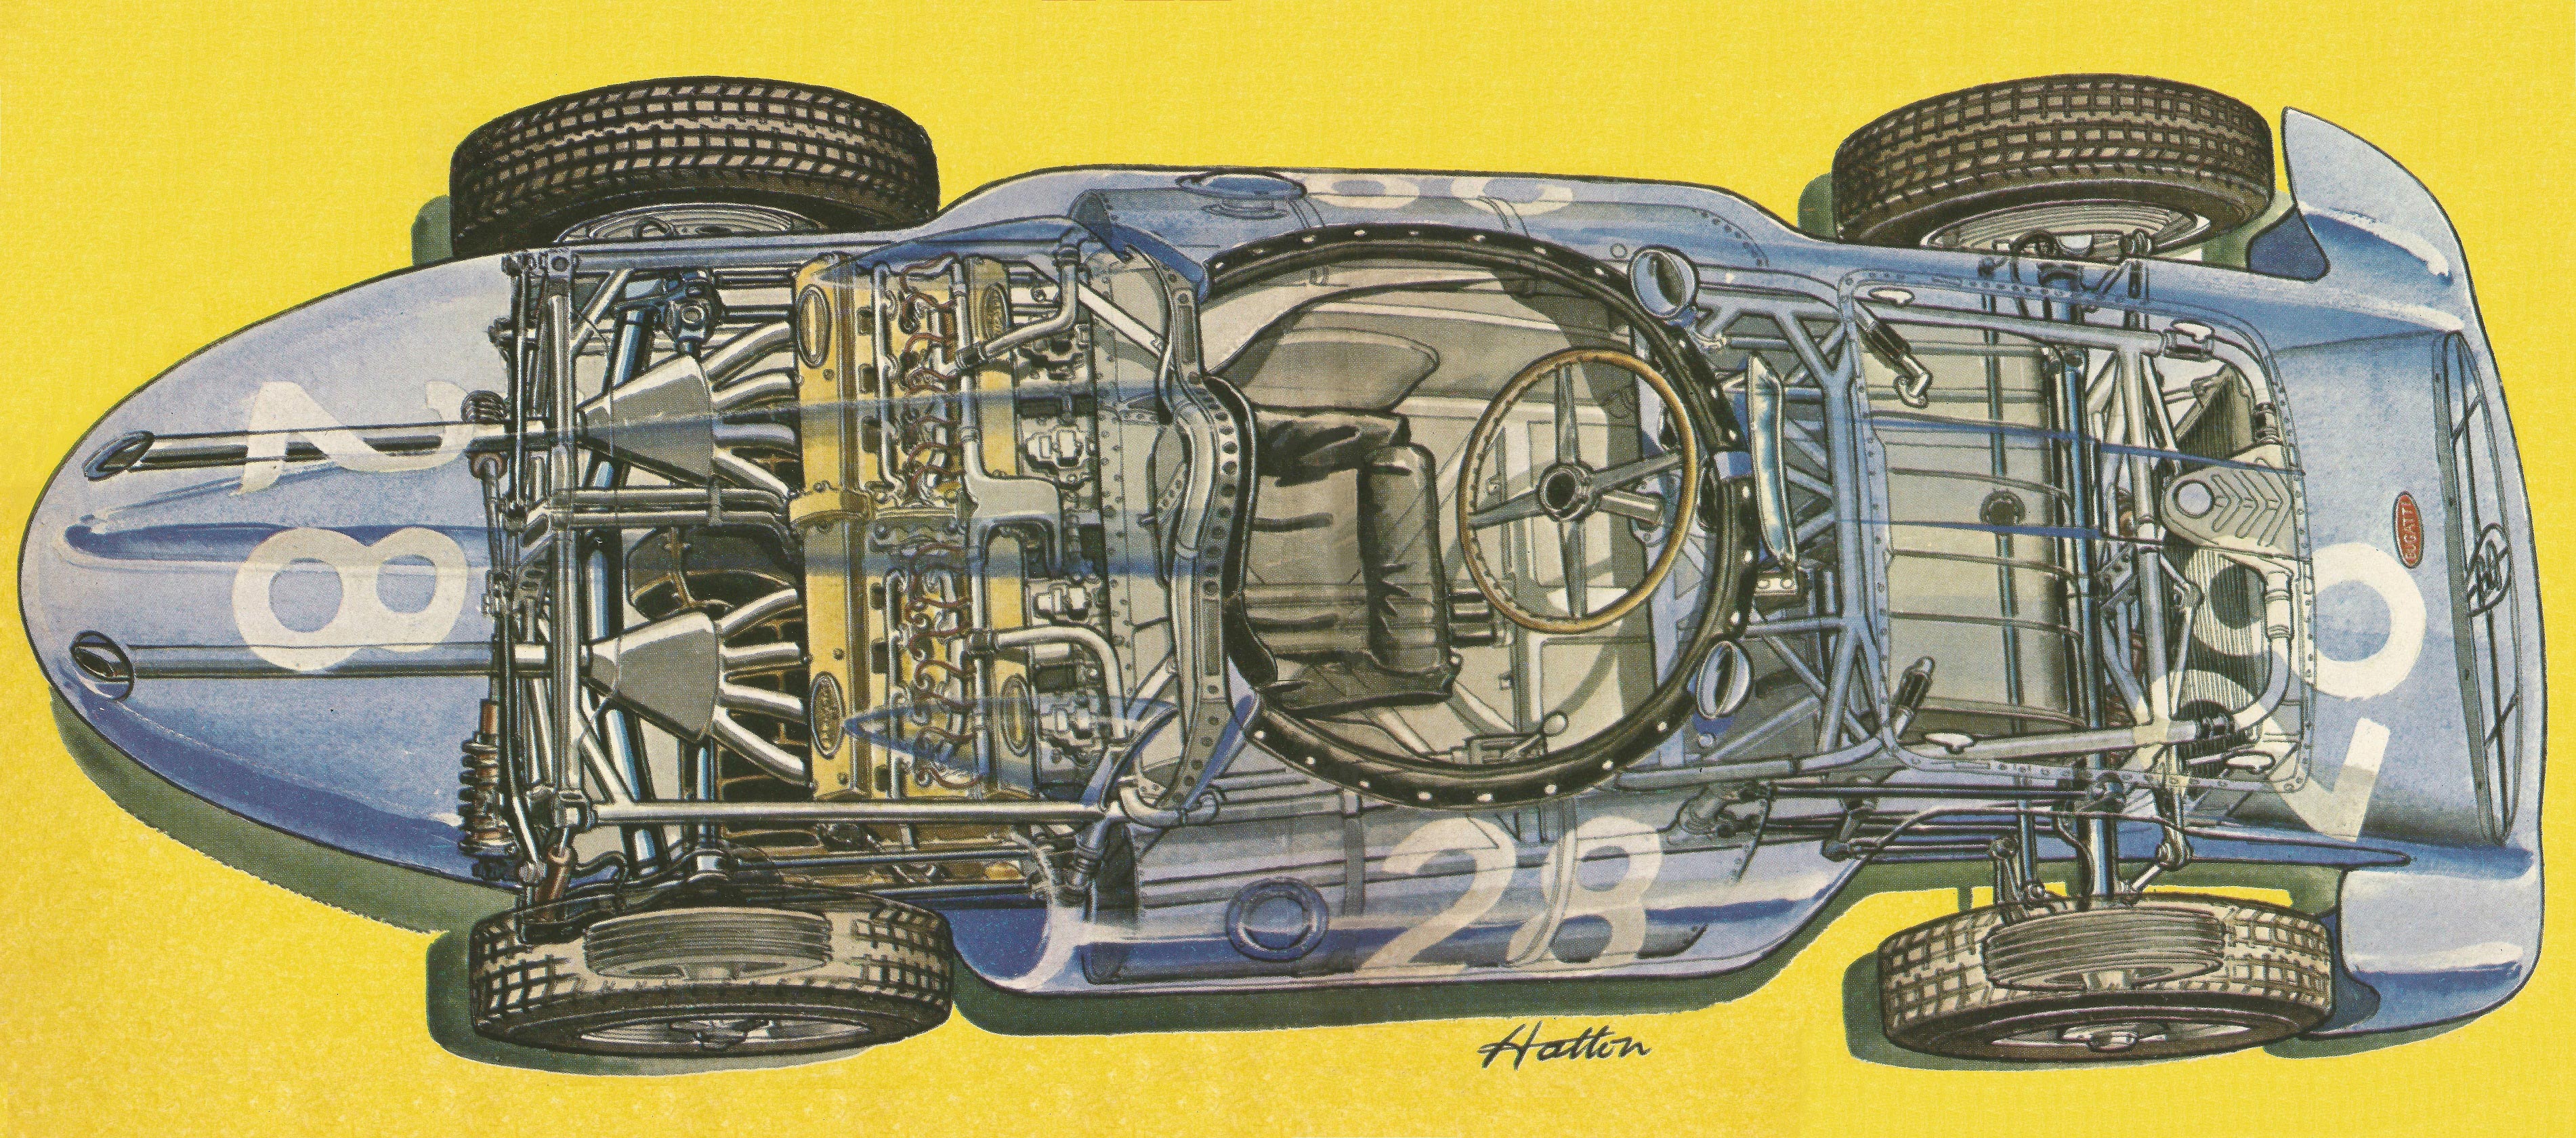 Bugatti Type 251 Grand Prix cutaway drawing